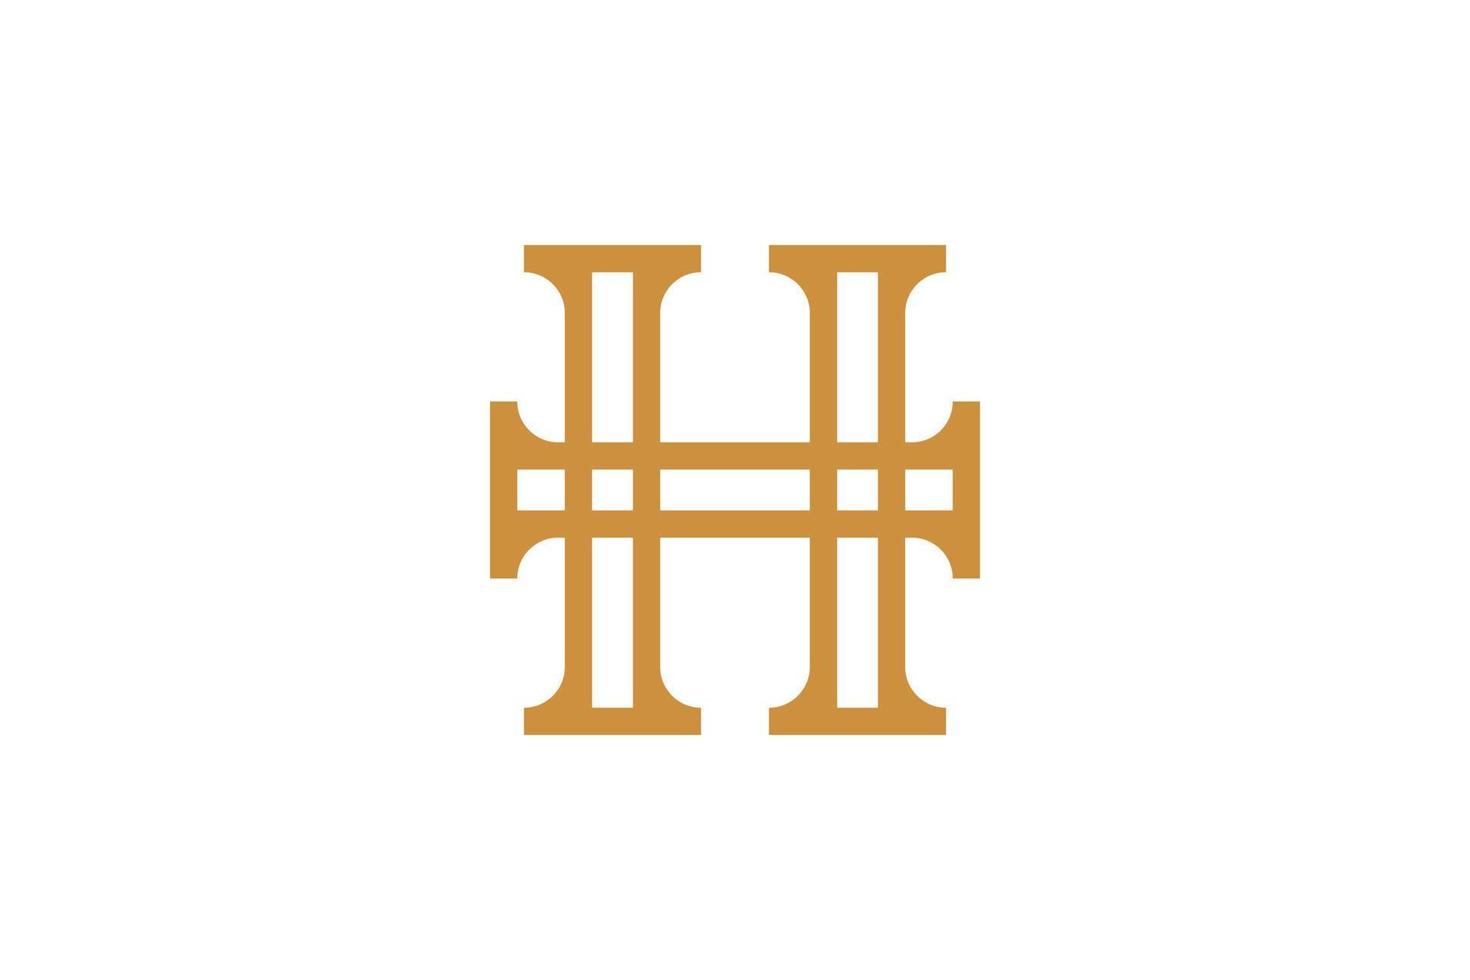 h brieven logo ontwerp vector